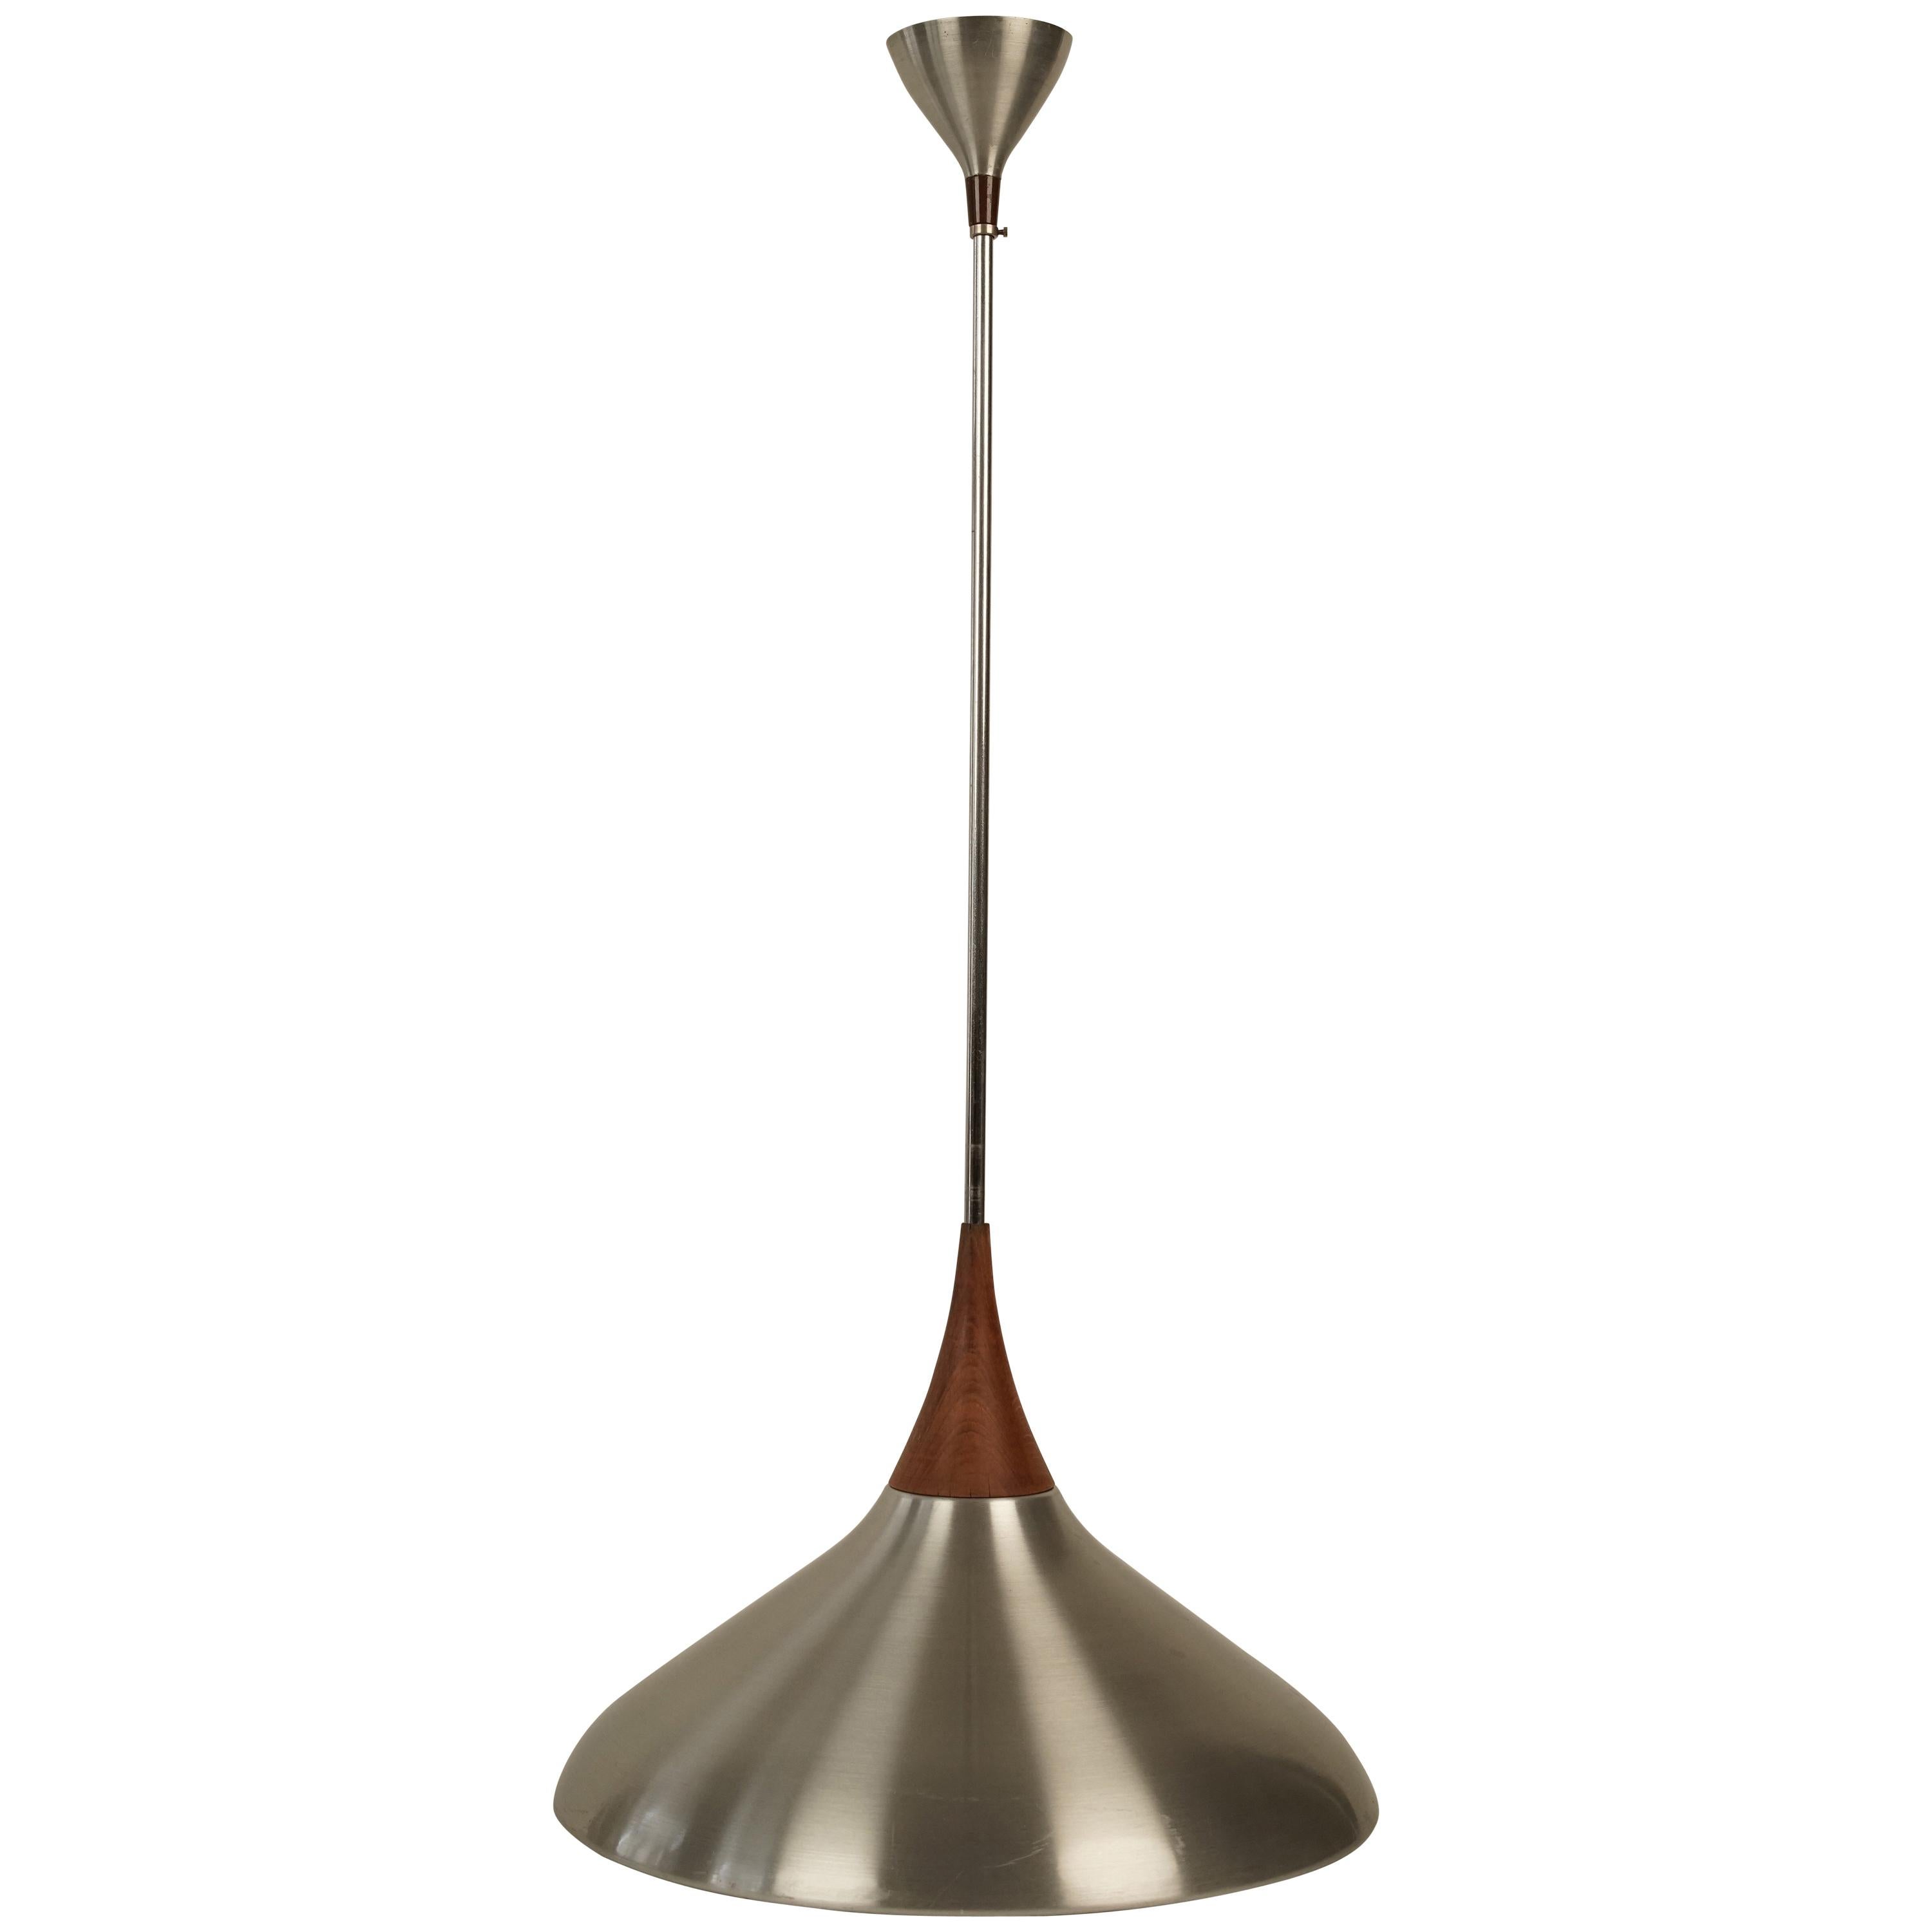 Aluminium and Teak Wood Pendant Lamp from 1960s